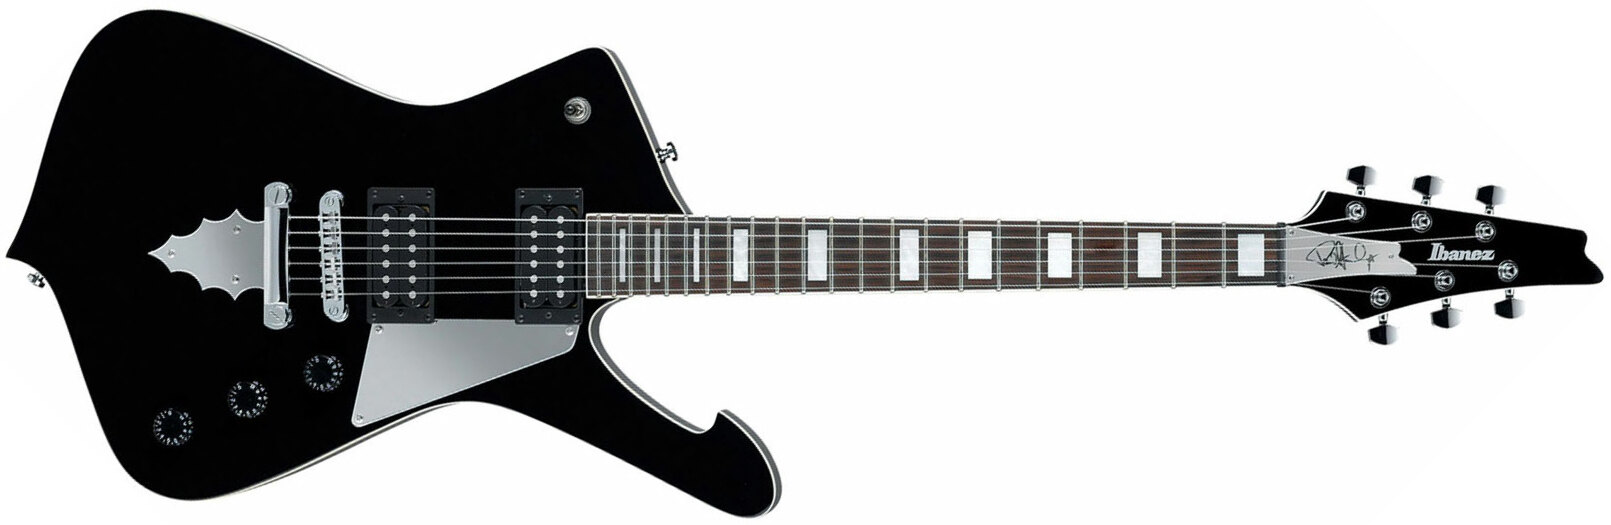 Ibanez Paul Stanley Ps60 Bk Signature Hh Ht Pur - Black - Metalen elektrische gitaar - Main picture